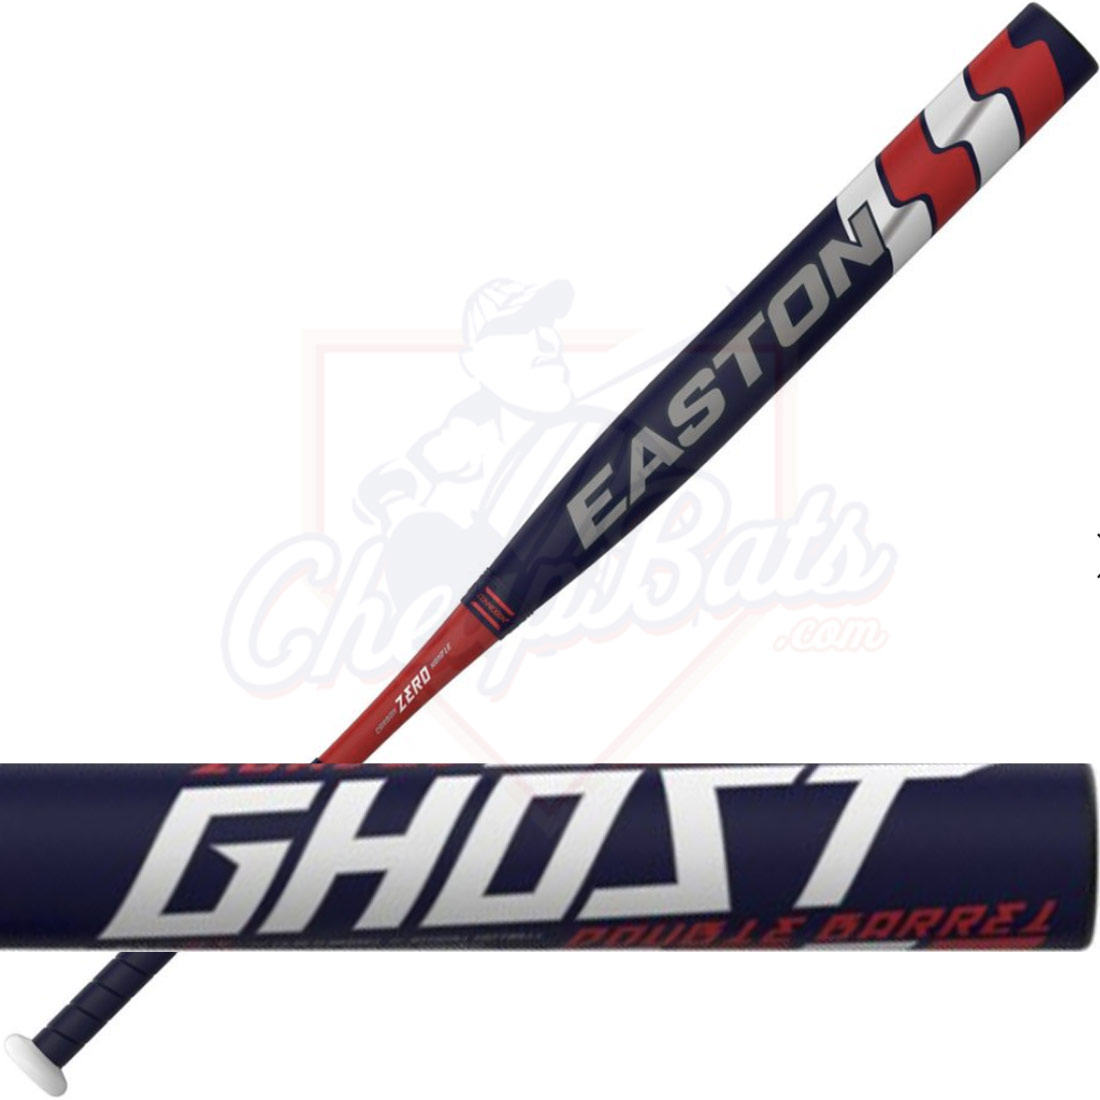 2022 Easton RWB Ghost Slowpitch Softball Bat Loaded ASA USA SP21GHRWB